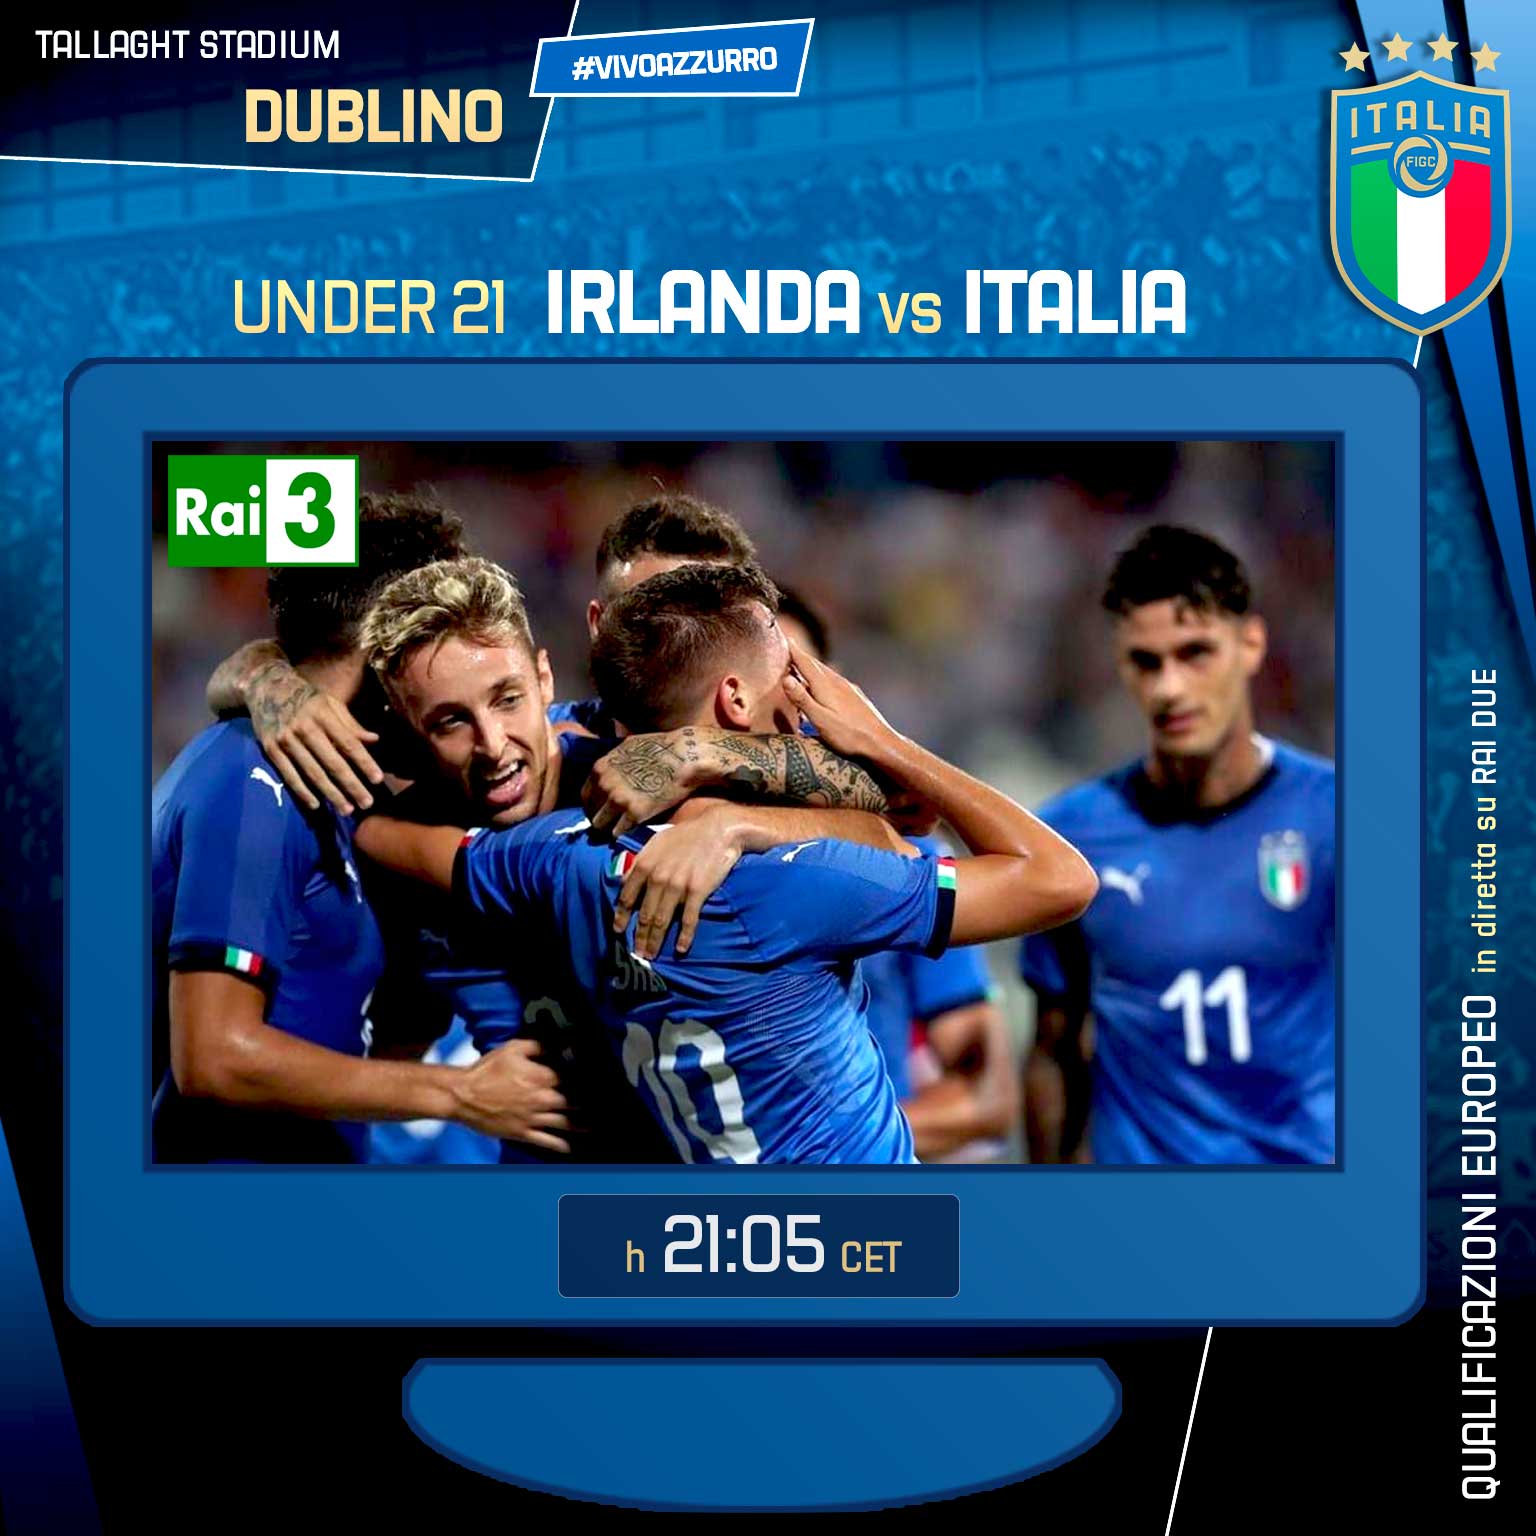 Pantaloncini FIGC 20 Europei Under 21 U21 Completo Kean Italia Maglia 